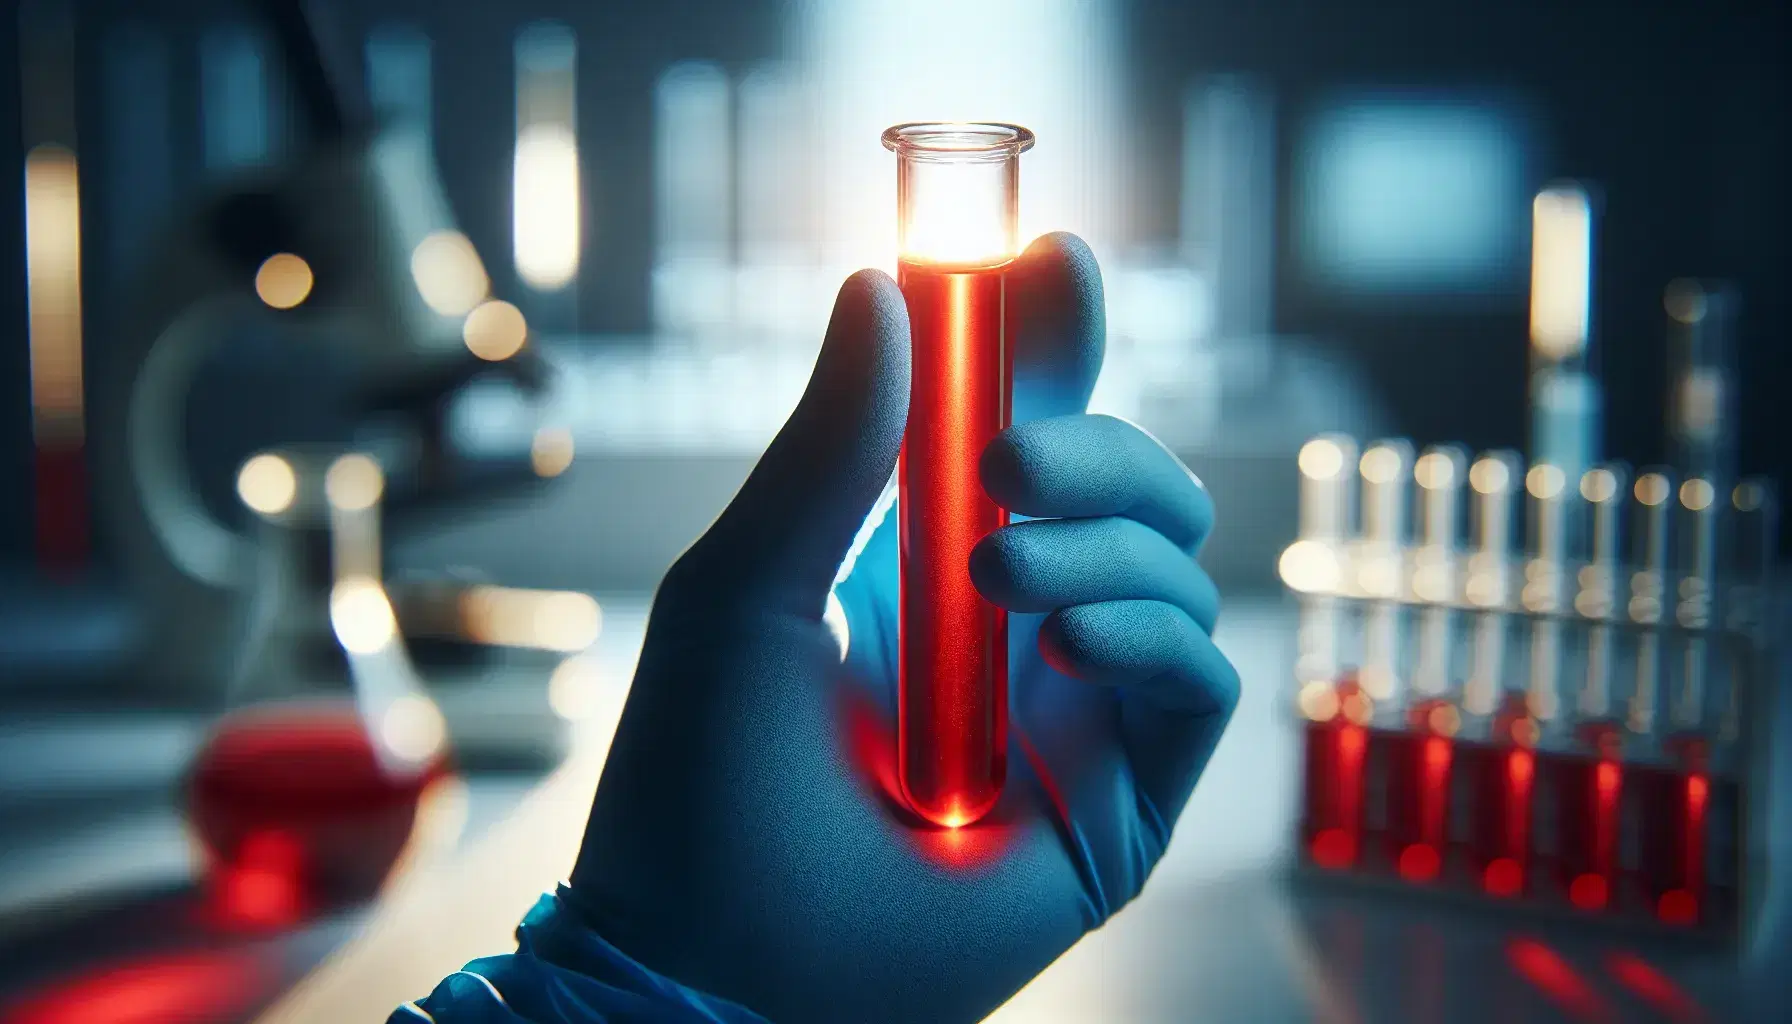 Mano con guante azul sostiene probeta con líquido rojo en laboratorio desenfocado, reflejando la luz y destacando el color.